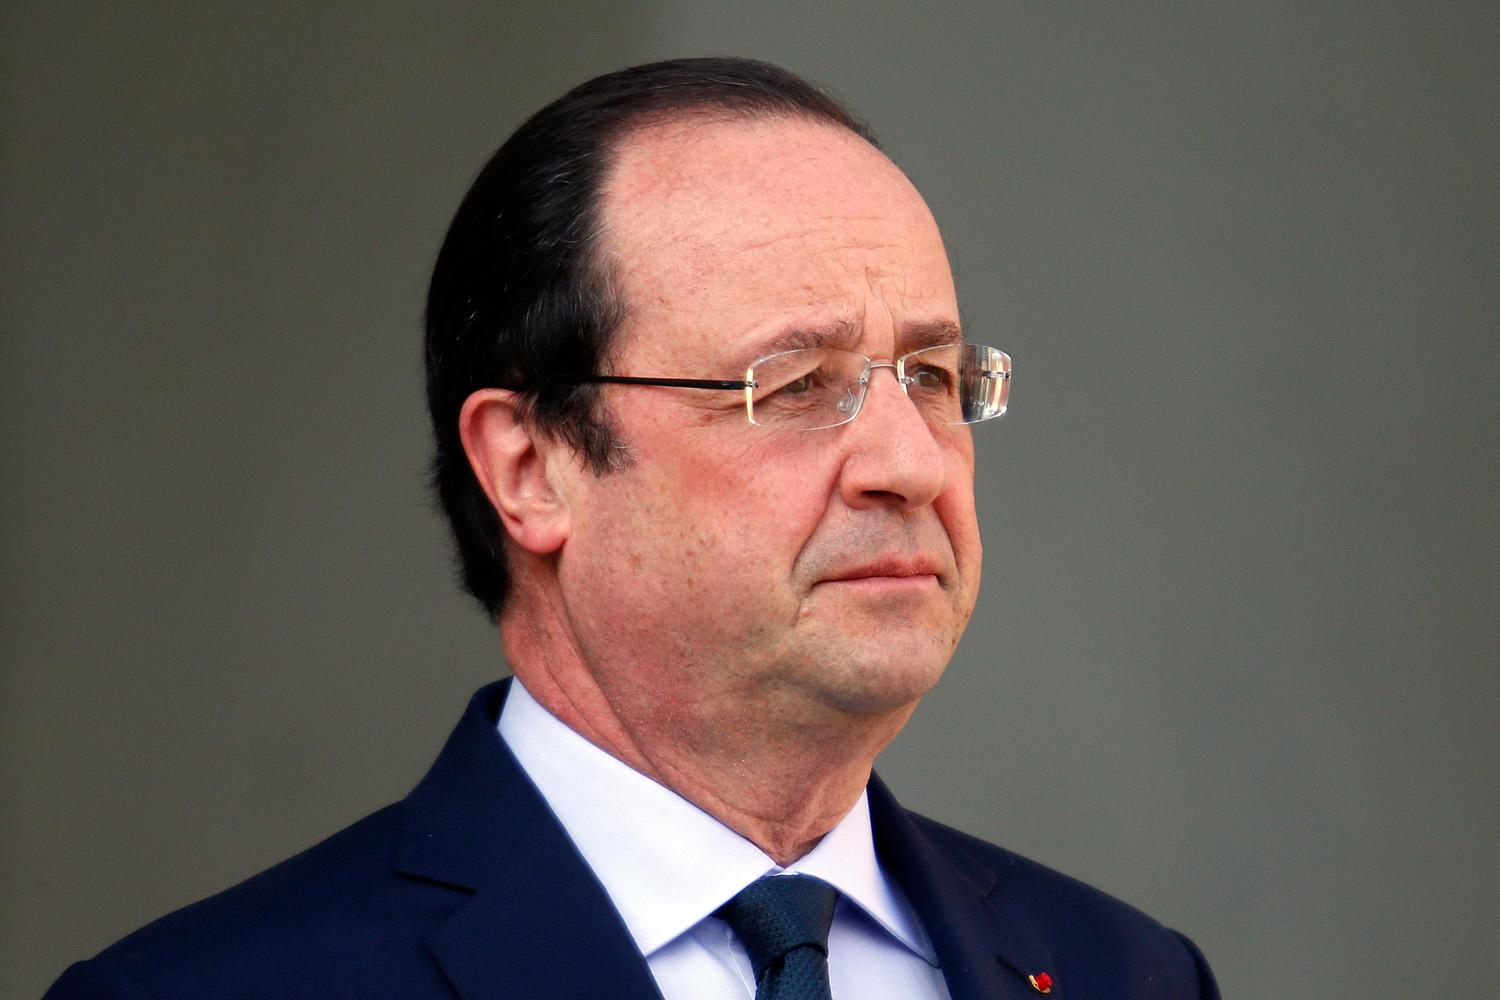 Hollande-nak most van esélye rendezni a sorokat a 2017-es elnökválasztás előtt